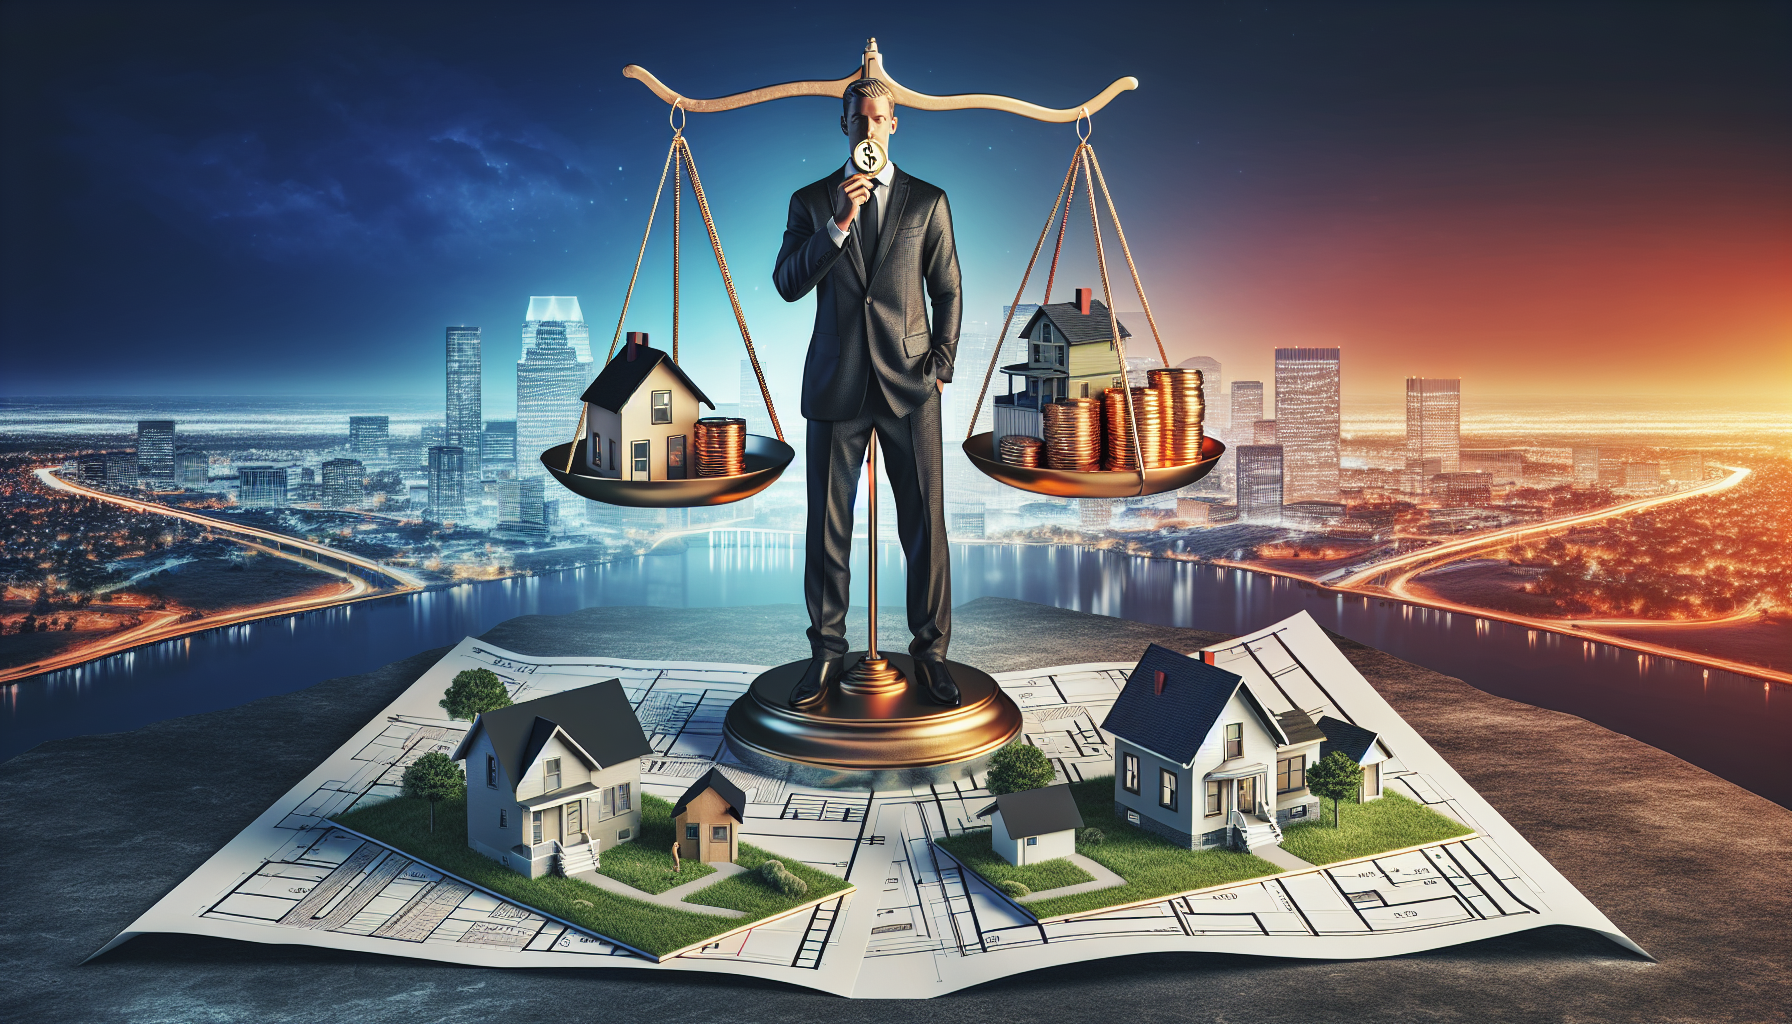 Artistic representation of an investor managing multiple rental properties